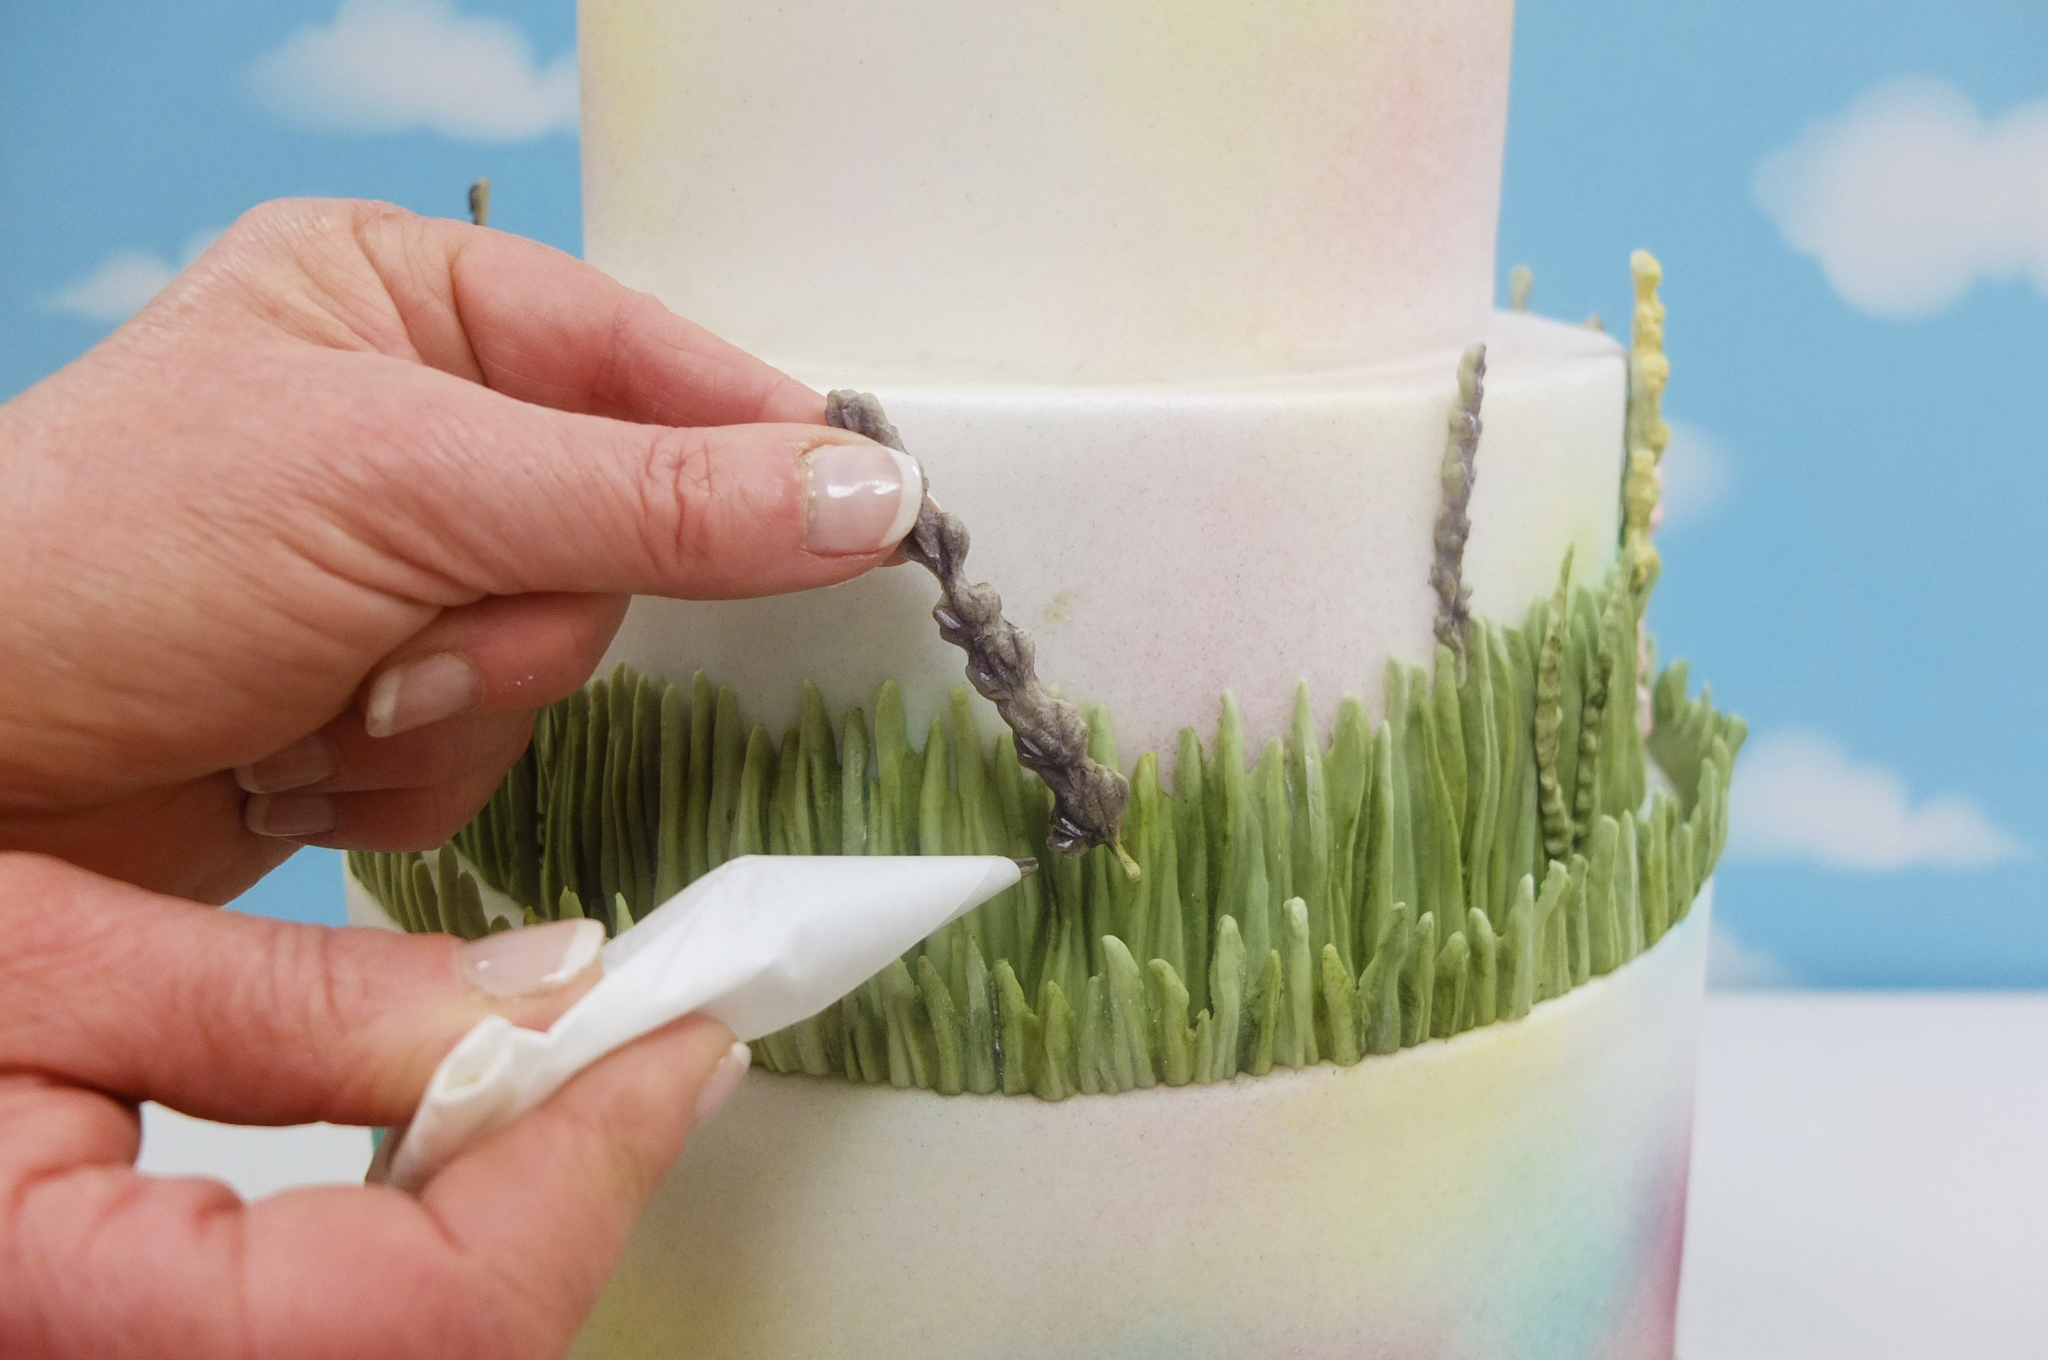 Wild Meadow Wedding Cake